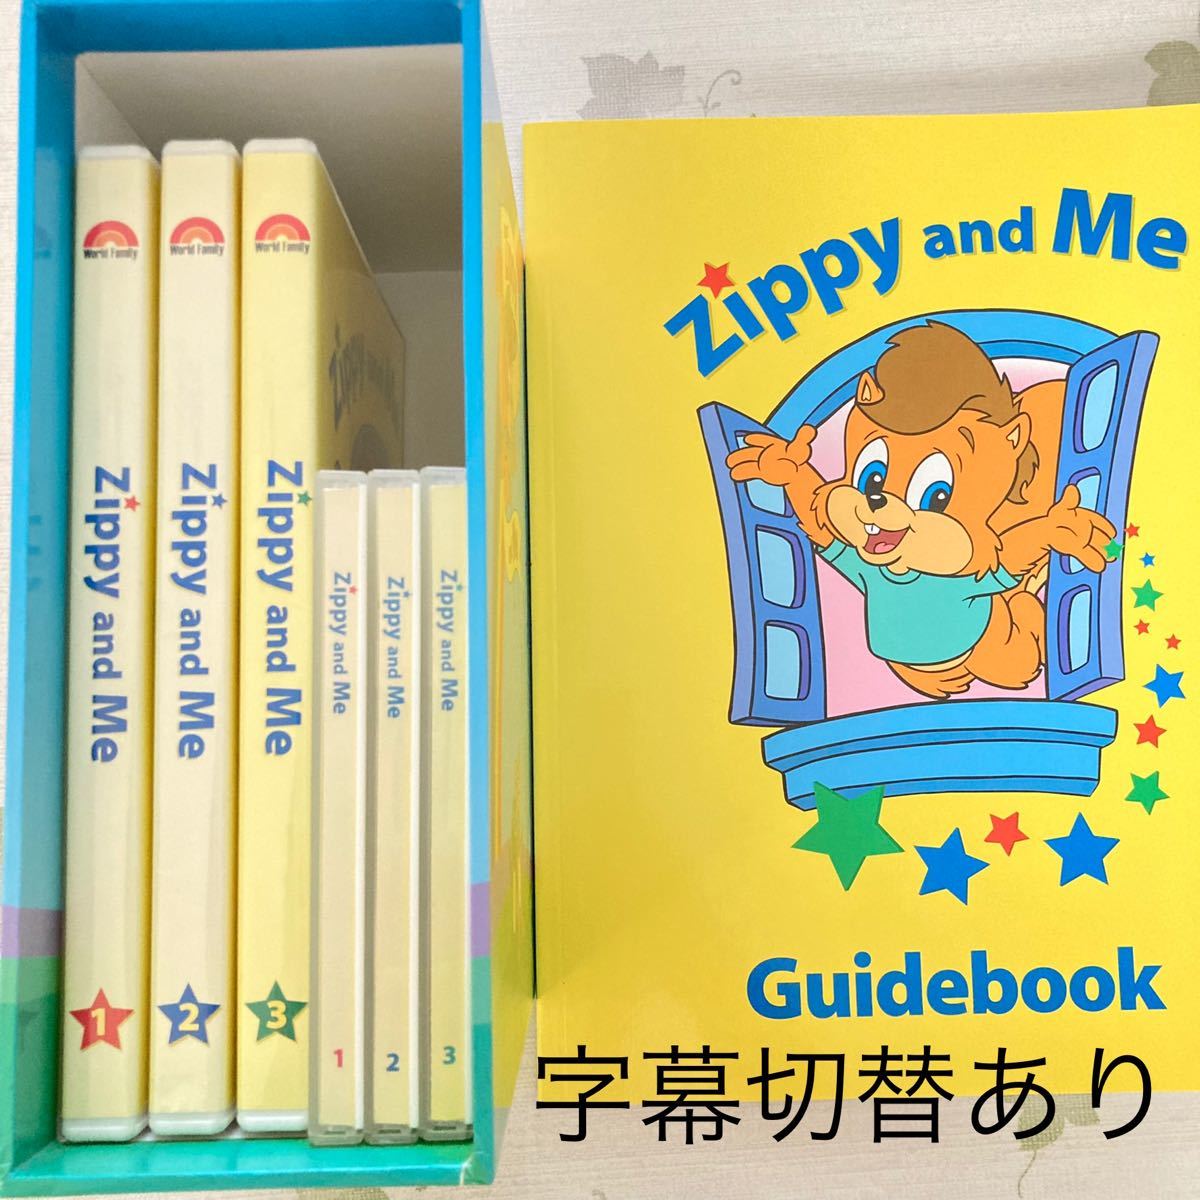 字幕あり DWE zippy and me DVD CD ガイドブック - 知育玩具